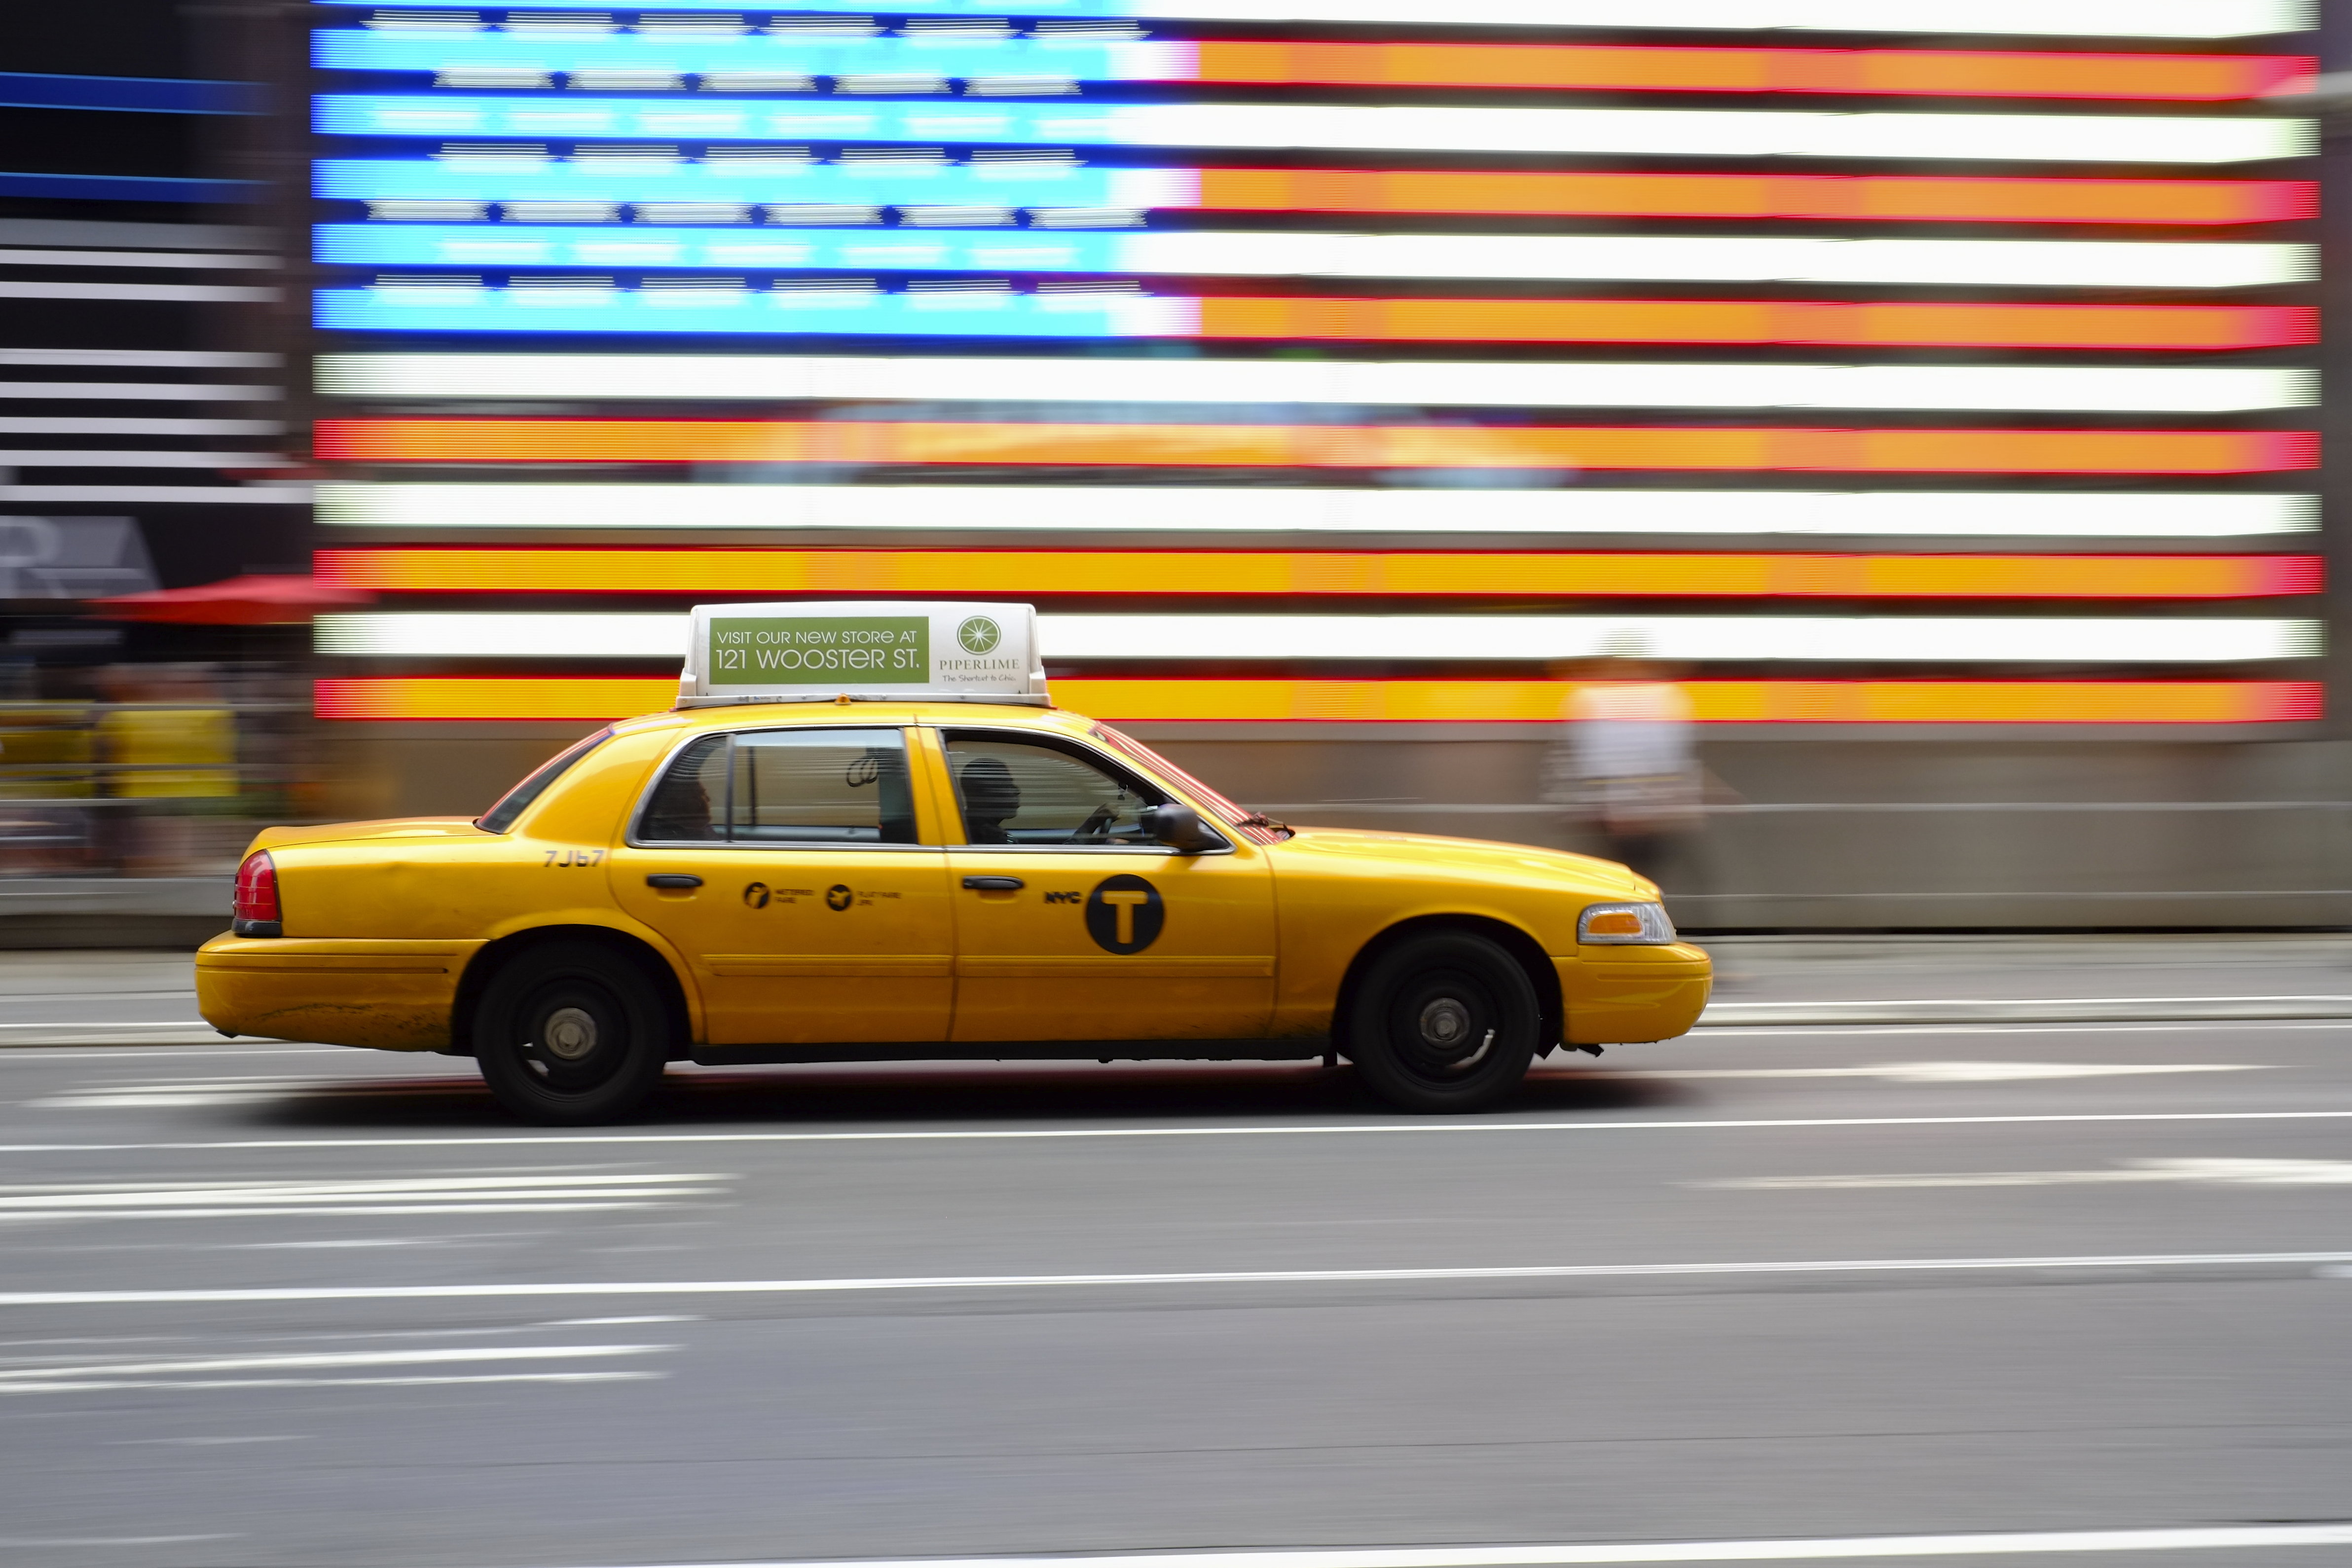 NYC_taxi